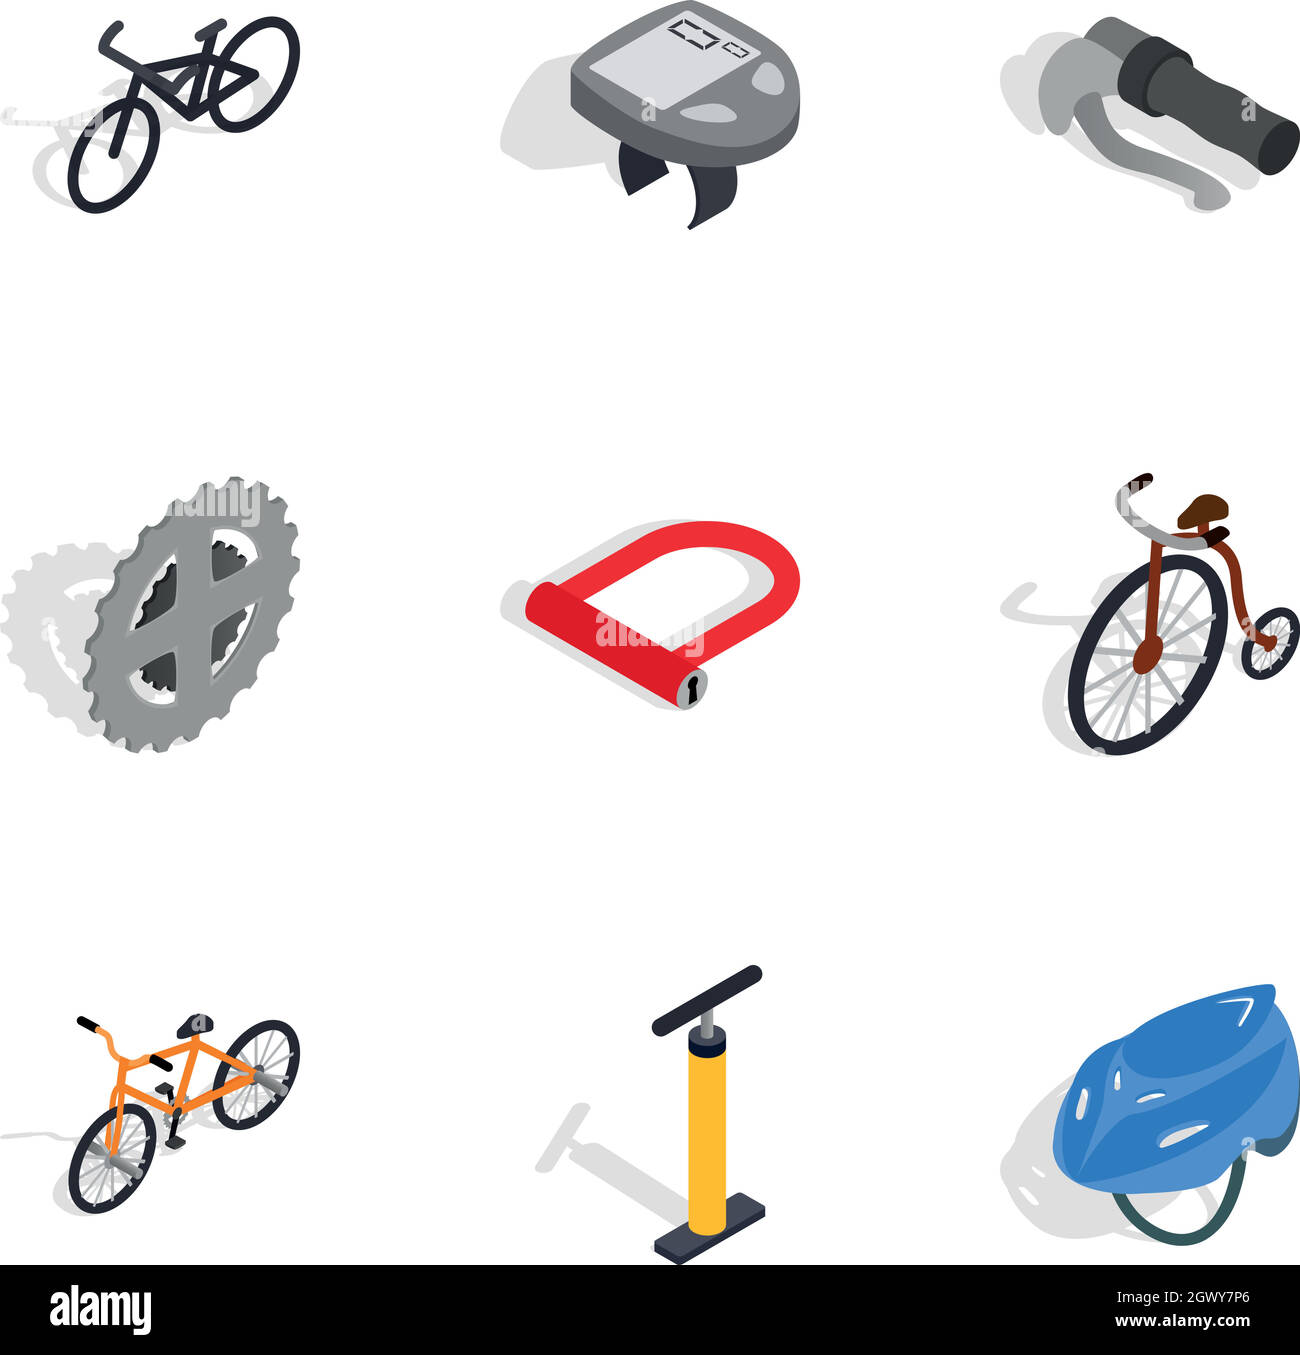 Fahrrad und Komponenten reparieren Symbole gesetzt Stock Vektor